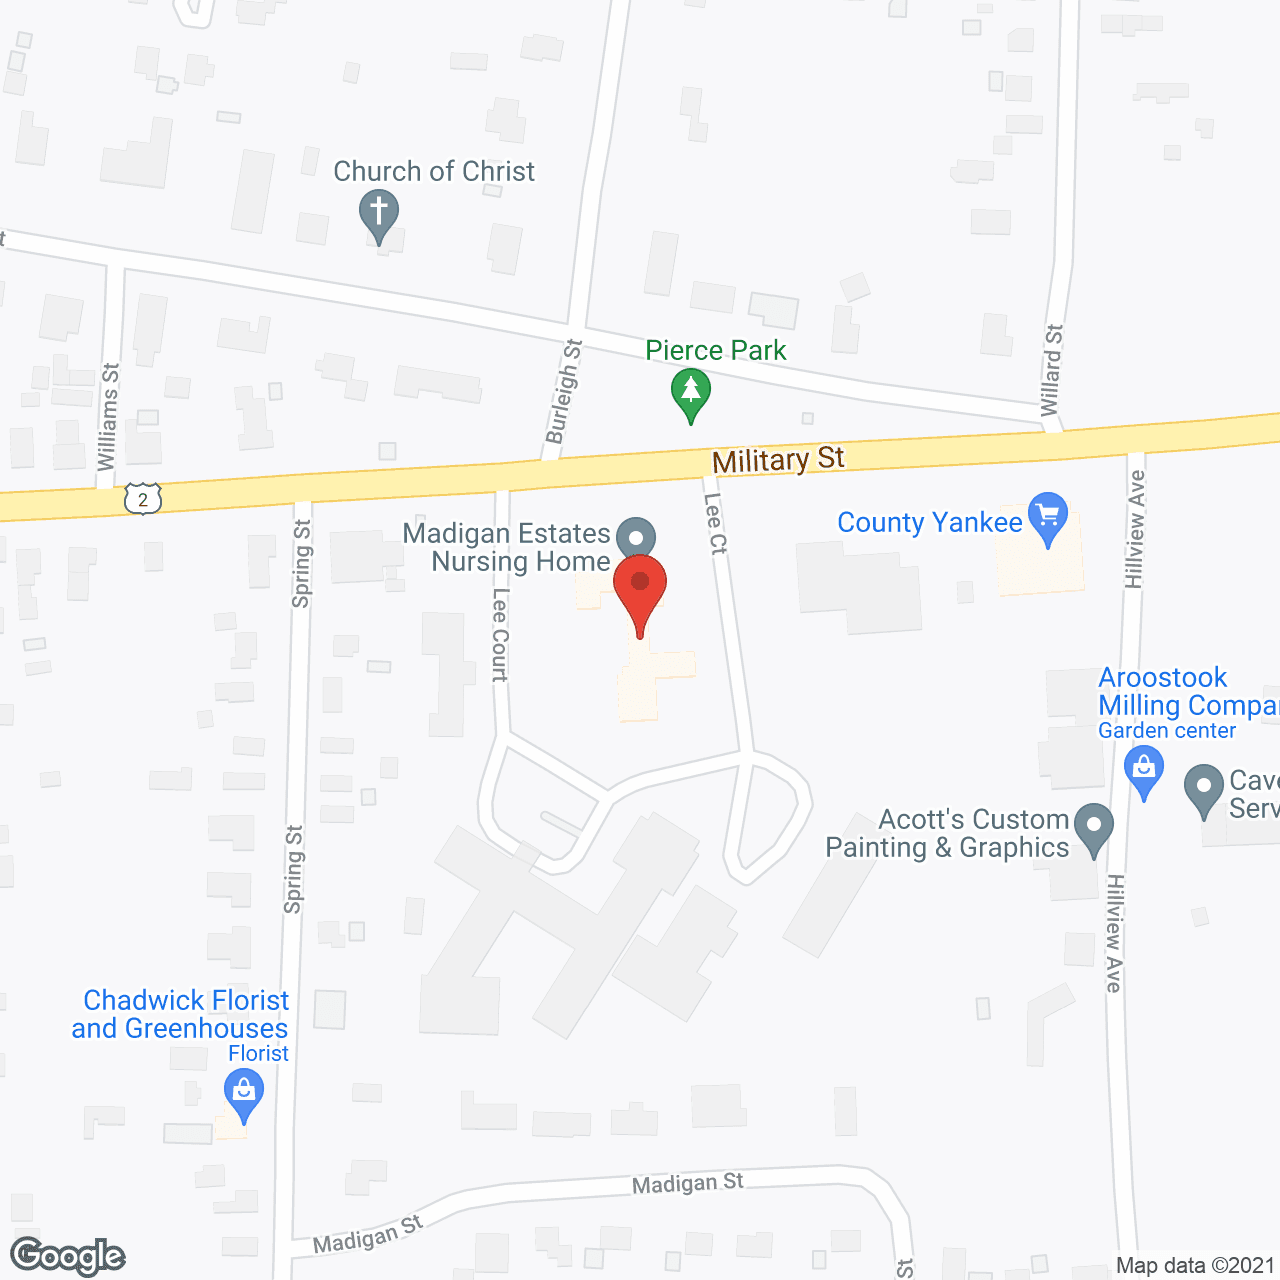 Madigan Estates Nursing Home in google map